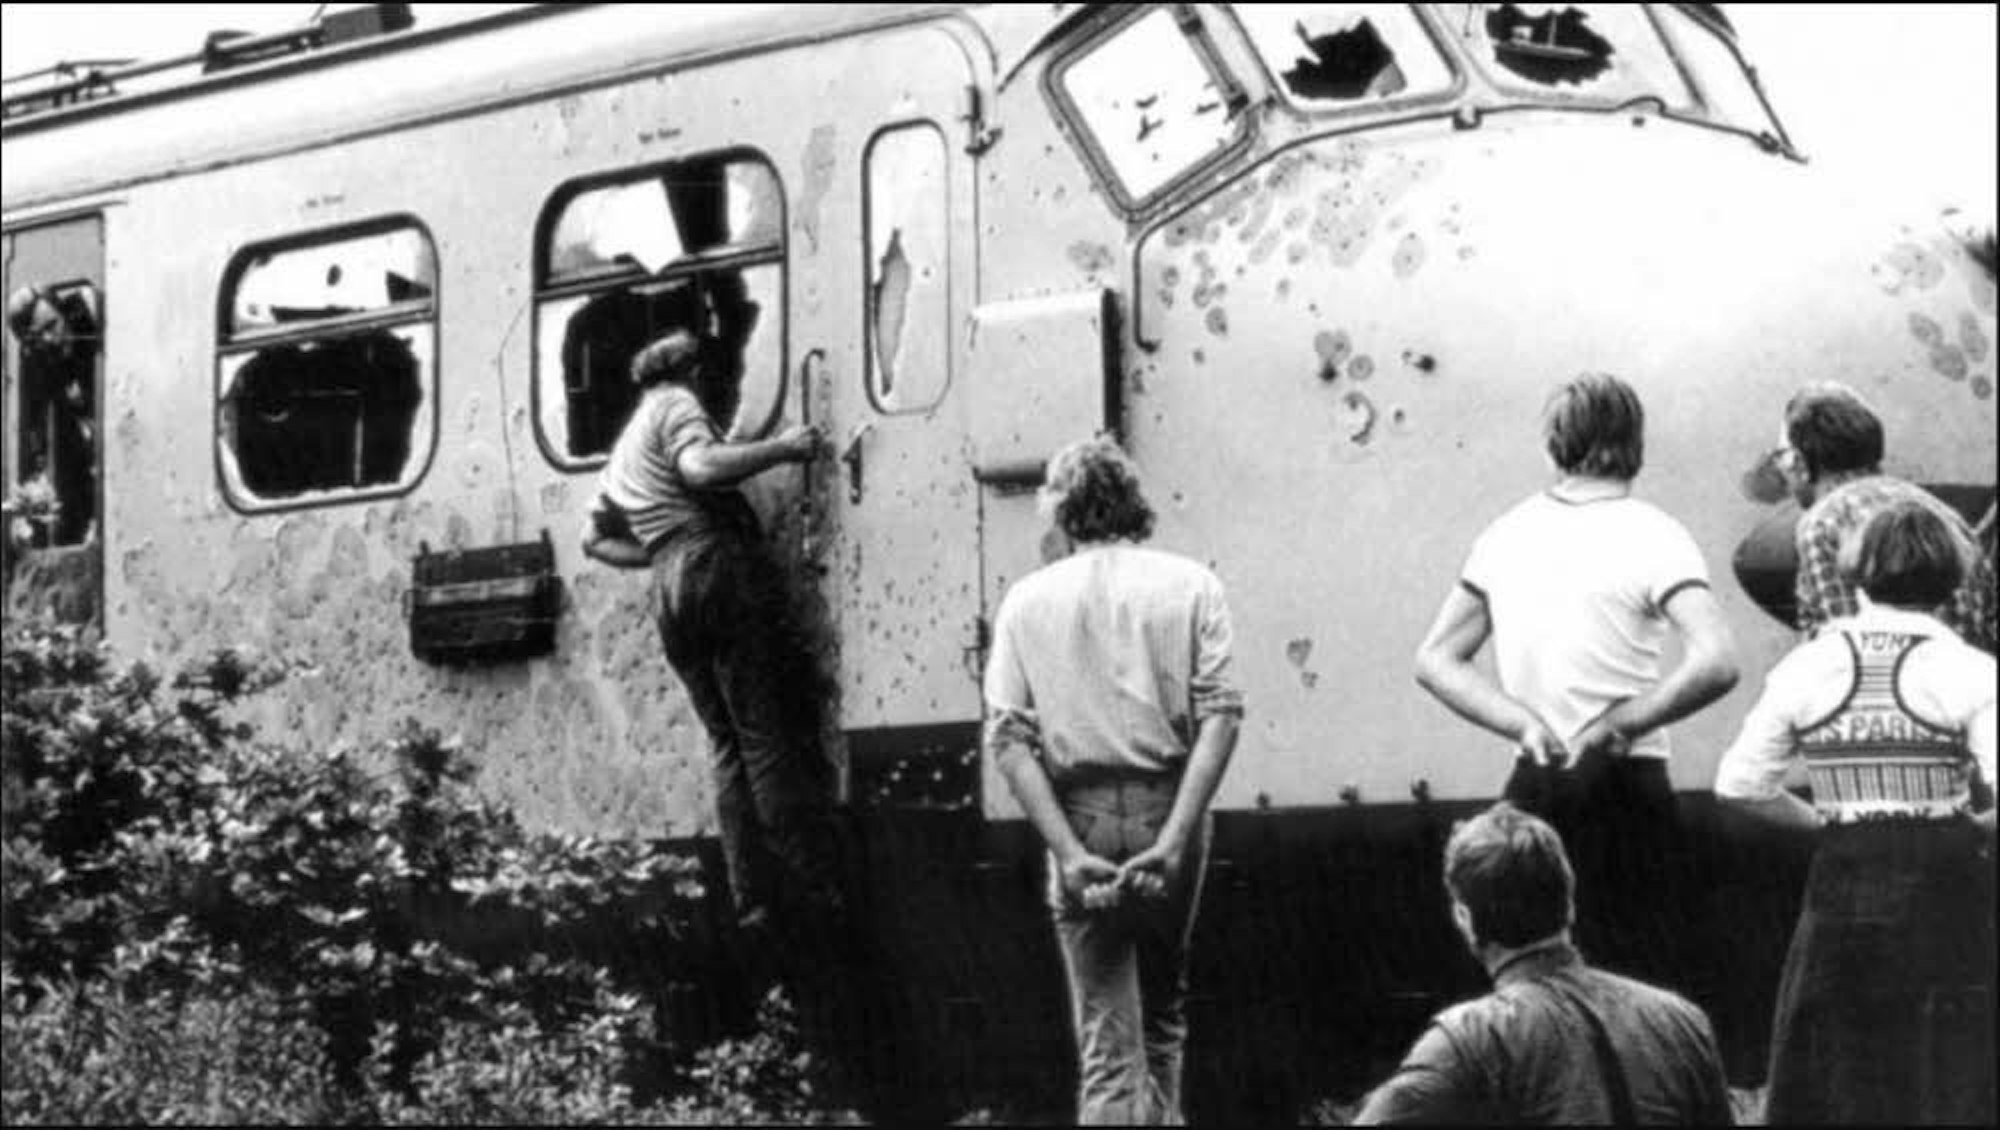 Juni 1977 bei Groningen, Niederlande: Schaulustige betrachten einen beschädigten Zug, in dem Aktivisten der molukkischen Minderheit Geiseln gehalten hatten. Günther Braun war damals als Reporter vor Ort. Heute sperrt die Polizei Tatorte weiträumig ab.